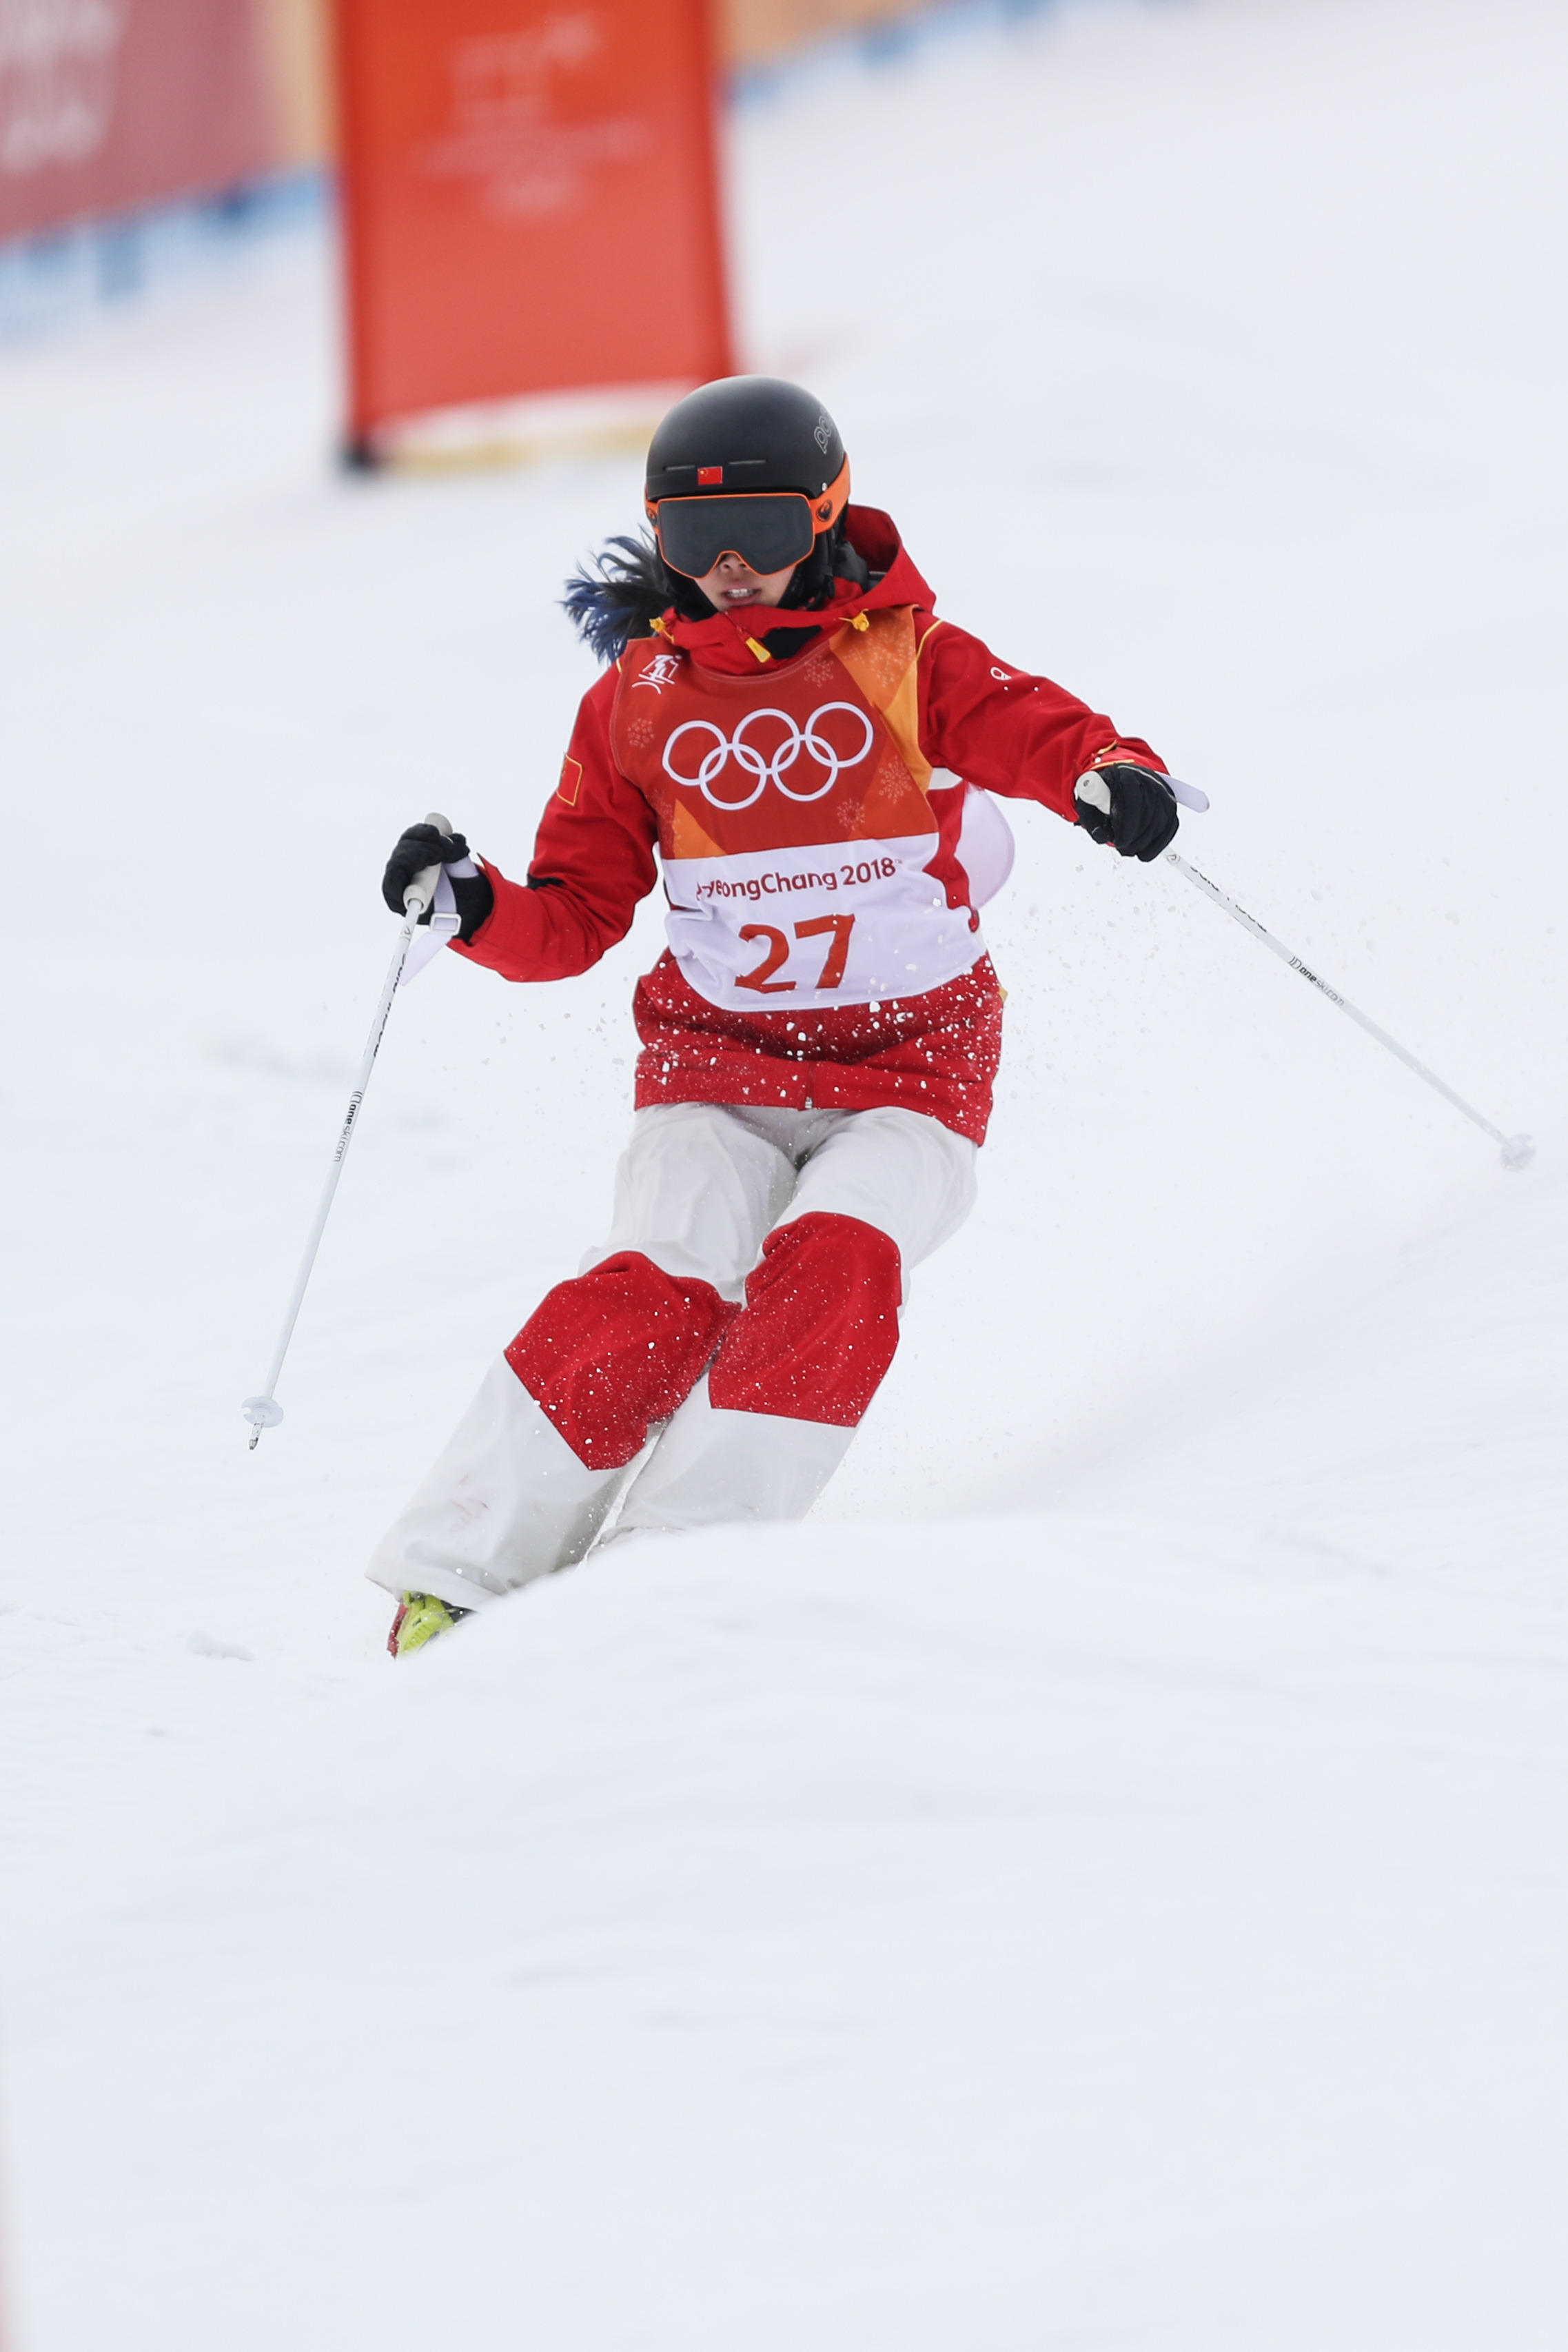 (冬奥会)(8)自由式滑雪女子雪上技巧资格赛赛况